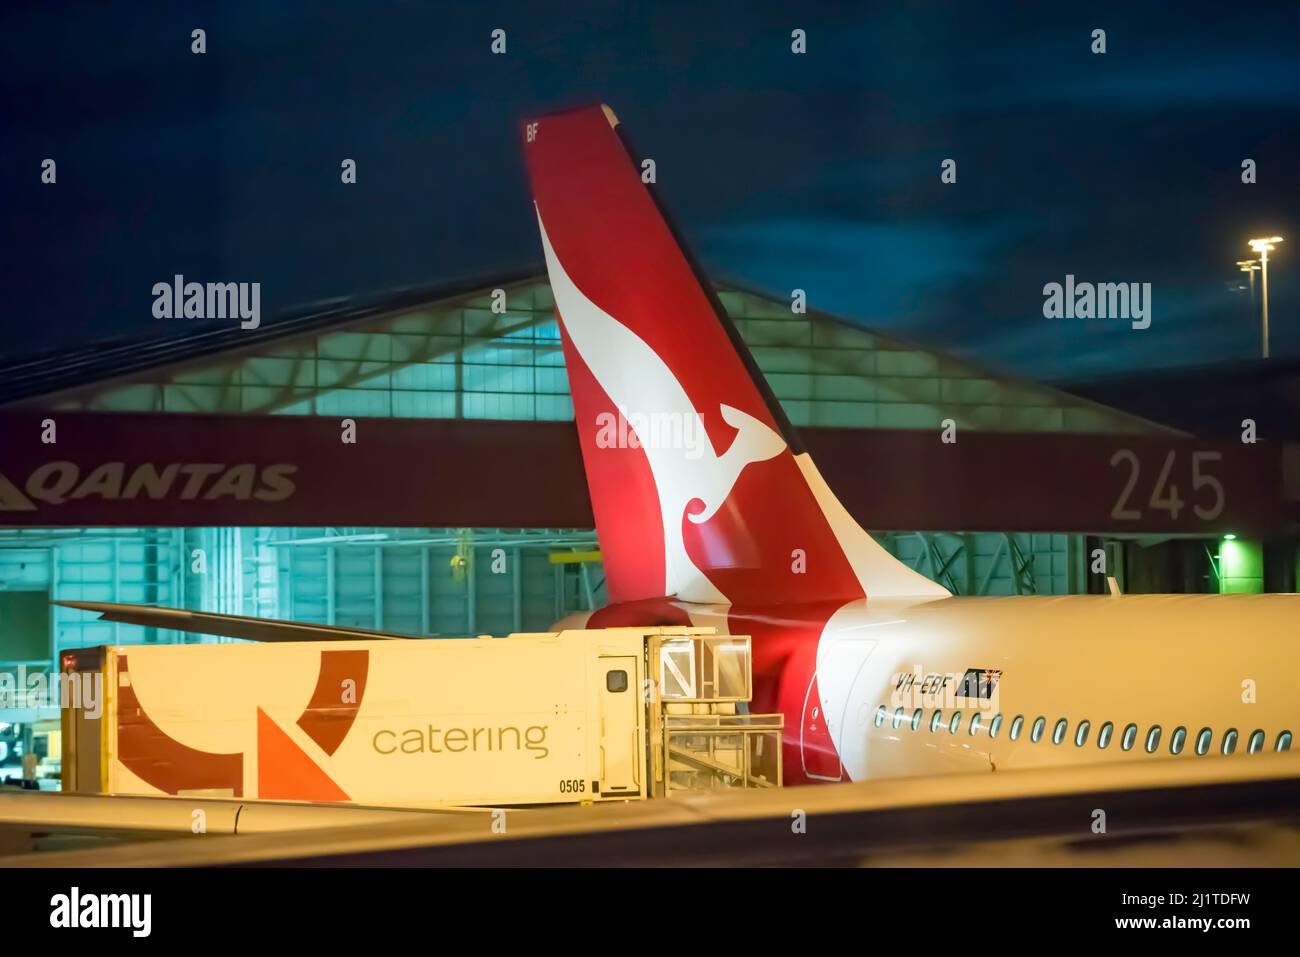 Qantas-Flugzeug VH-EBF, Airbus A330-200, der am Inlandsflughafen von Sydney geparkt ist und im Morgenlicht von einem Catering-Truck aufgefüllt wird Stockfoto